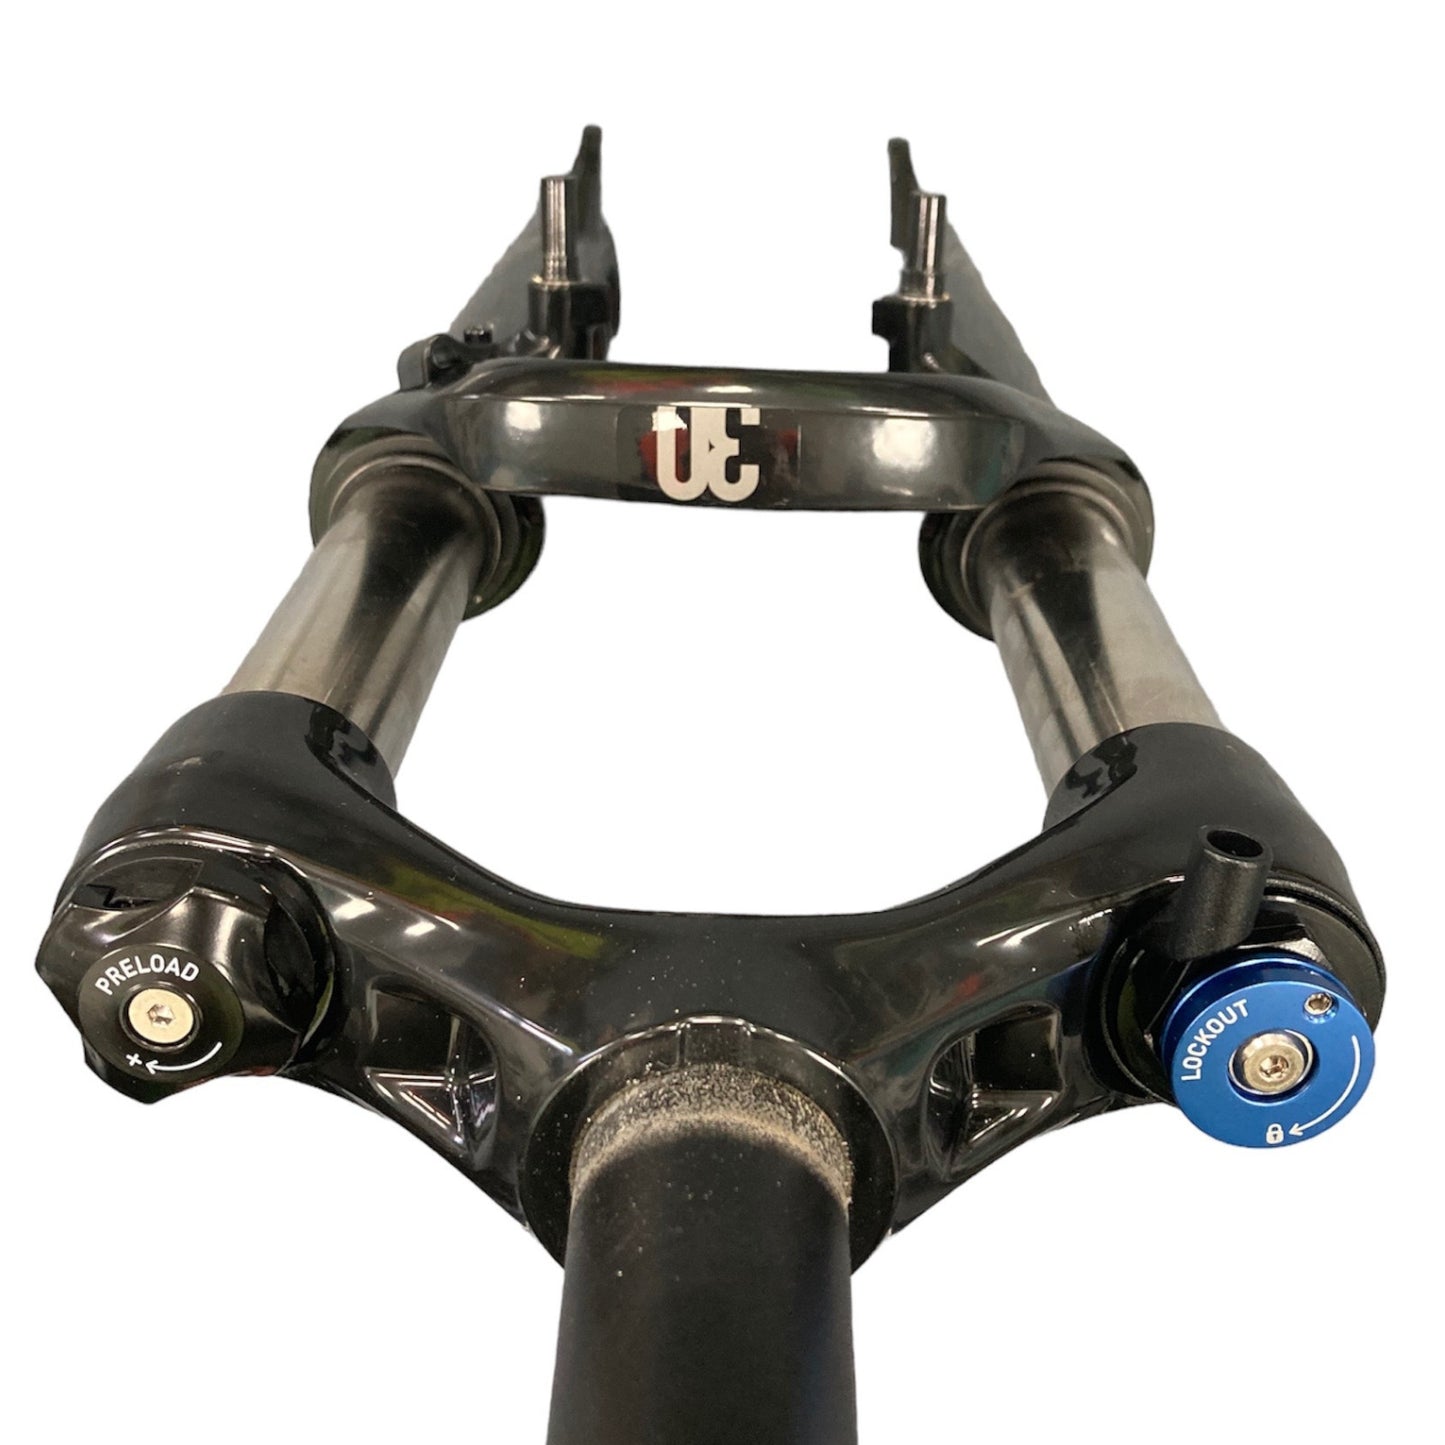 Fourche à suspension pour vélo VTT Rockshox 30 Silver TK 100 mm 1 1/8 26"